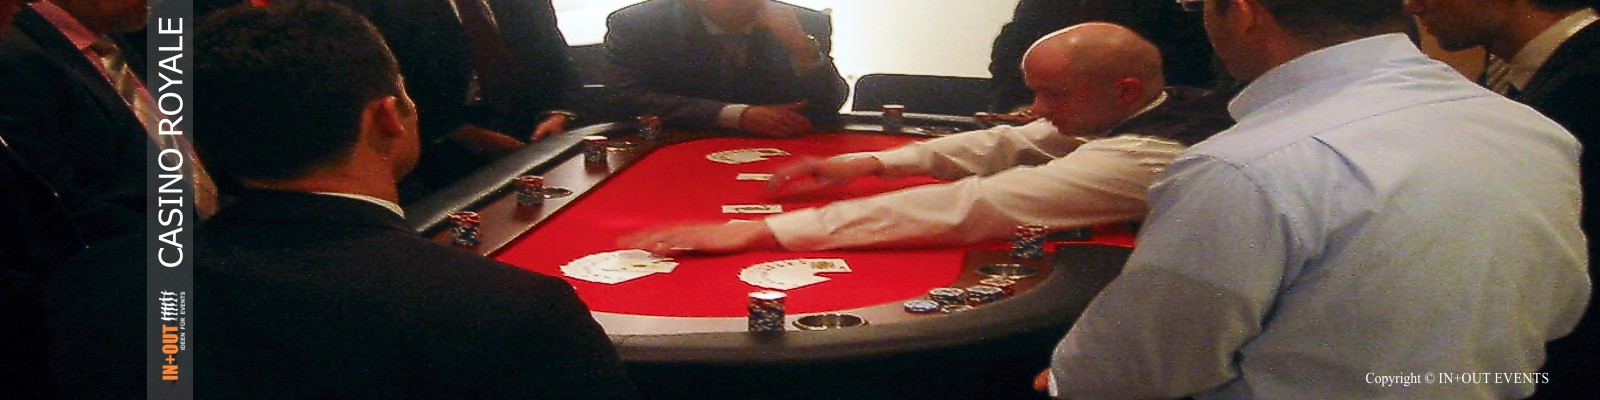 Casino Spieltisch Poker